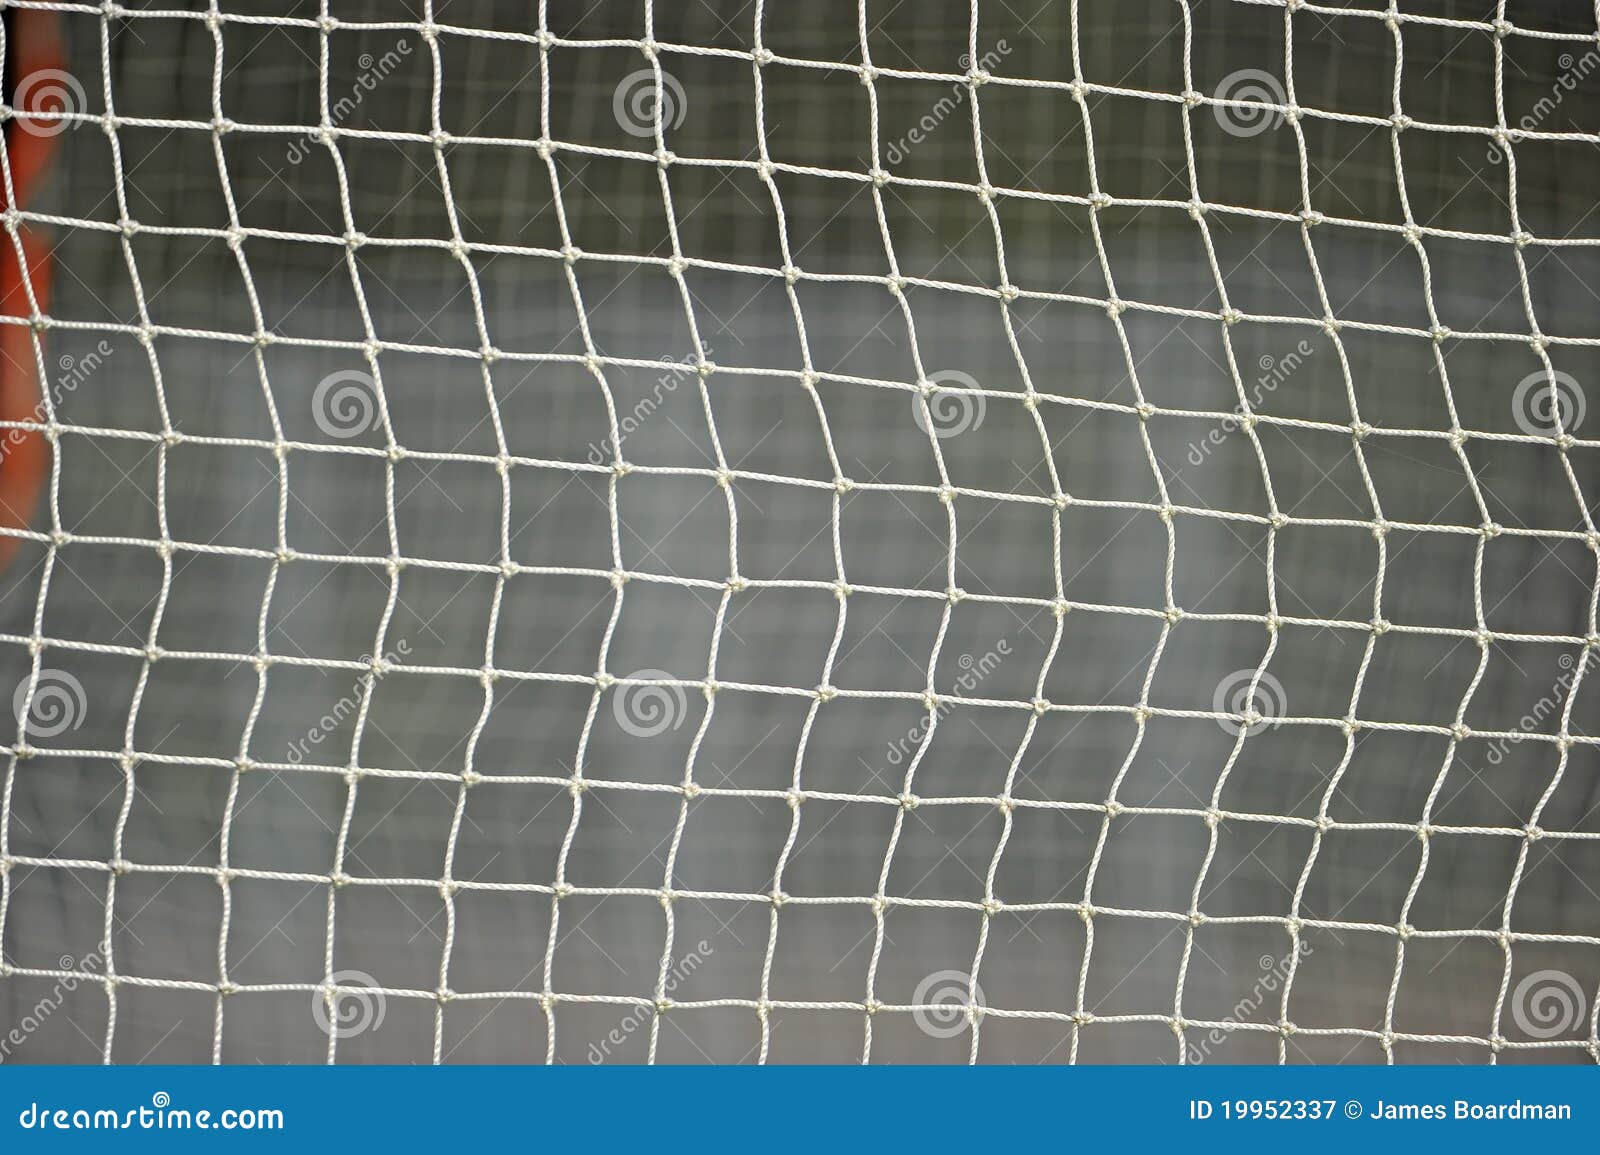 lacrosse goal netting